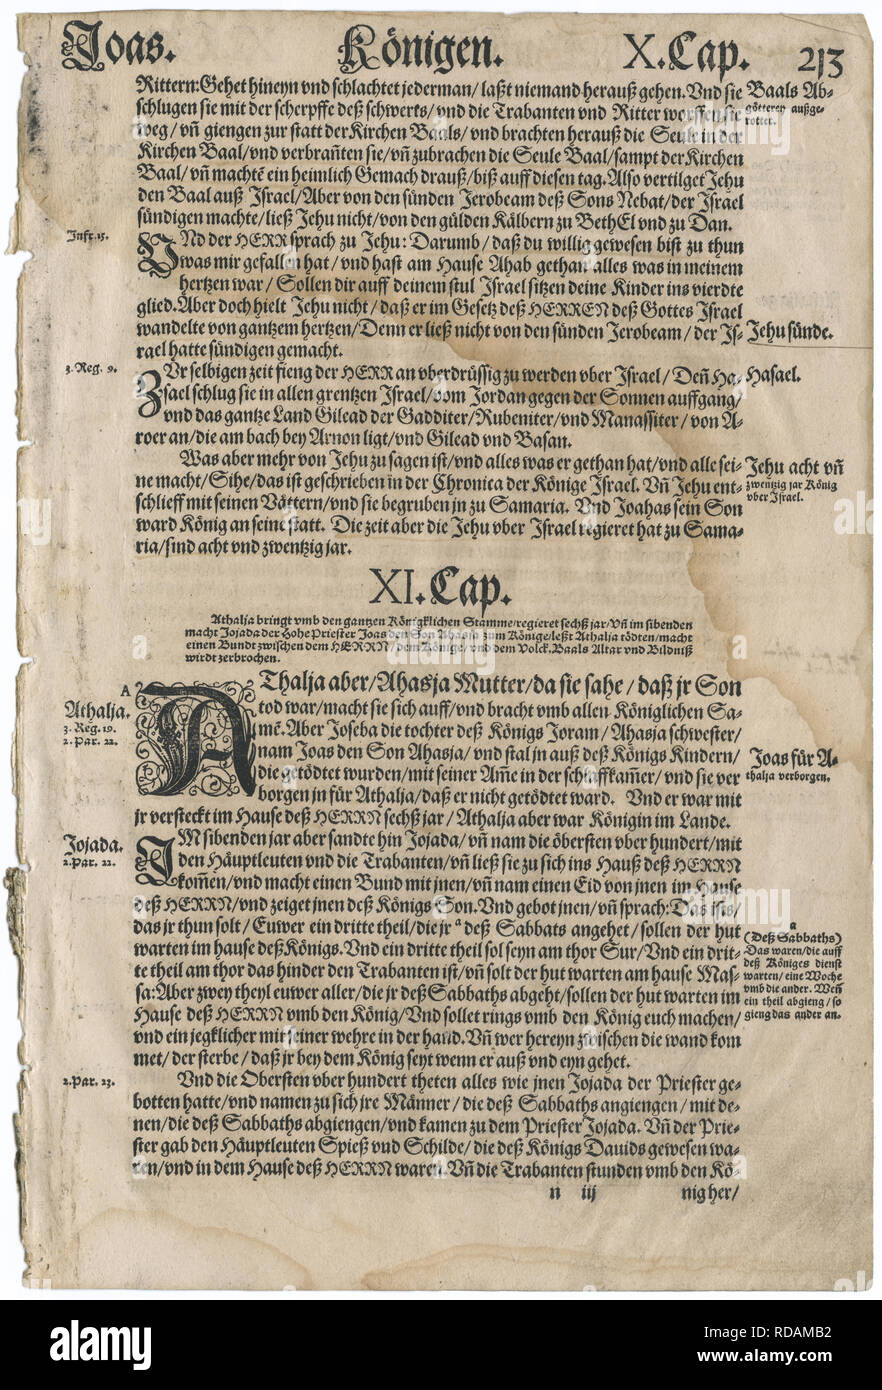 Feuille d'un 1567 Bible en langue allemande, la traduction du grec et hébreu par Martin Luther. Le texte affiché est de l'Ancien Testament livre de II Rois. Banque D'Images